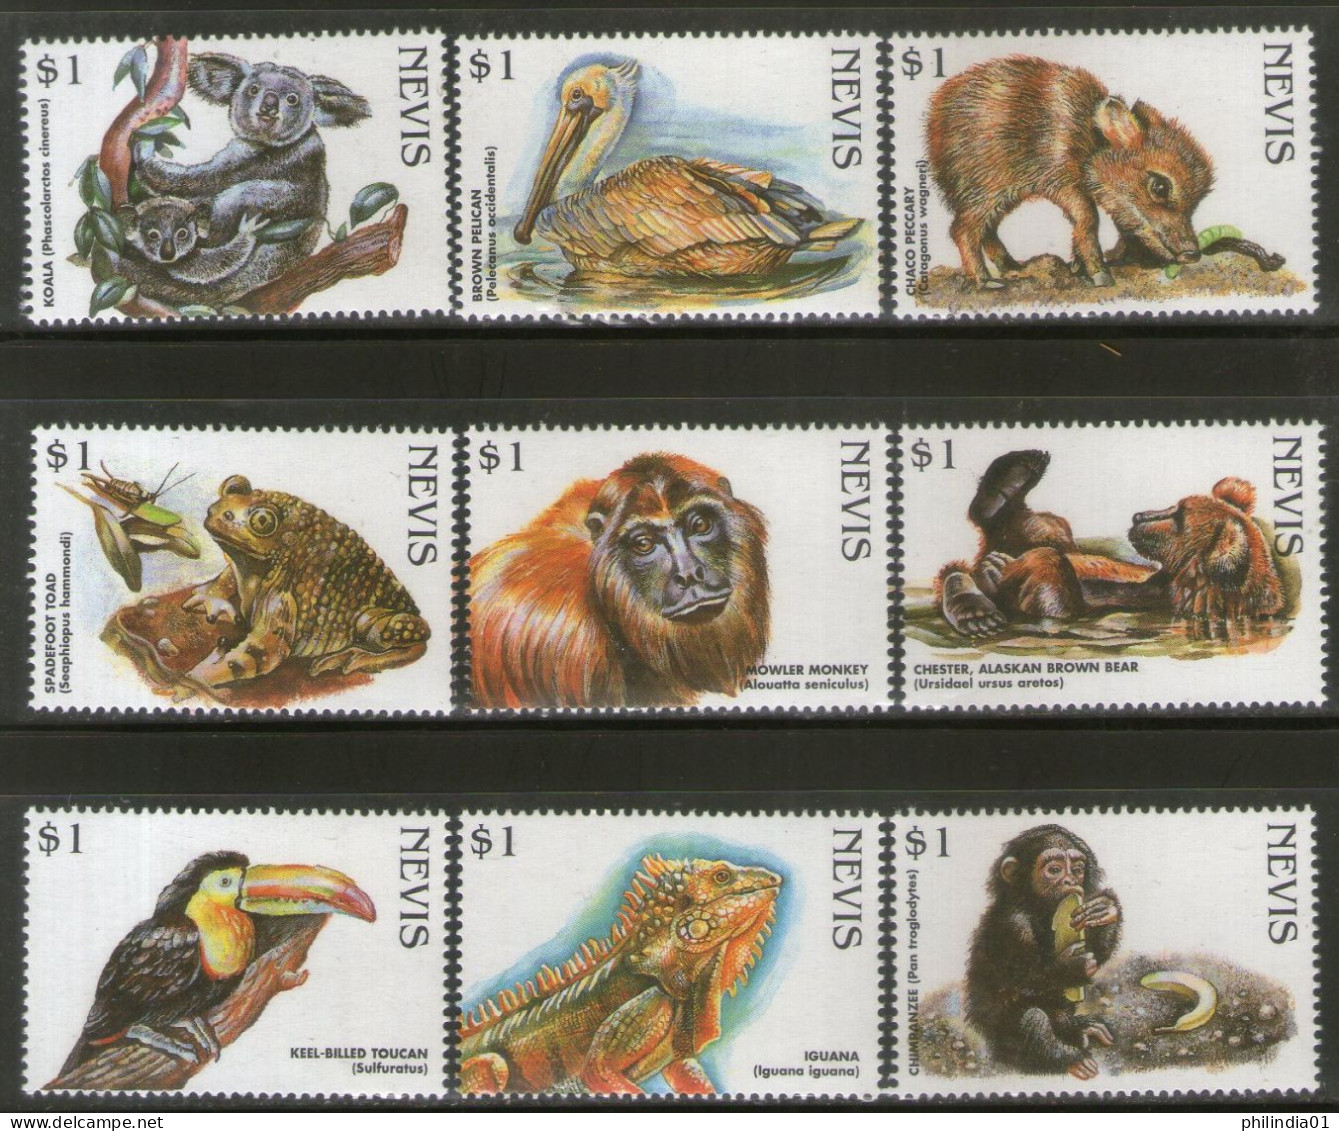 Nevis 1998 Endangered Species Birds Monkey Bear Wildlife Animals Sc 1073 9v MNH # 196 - Scimmie